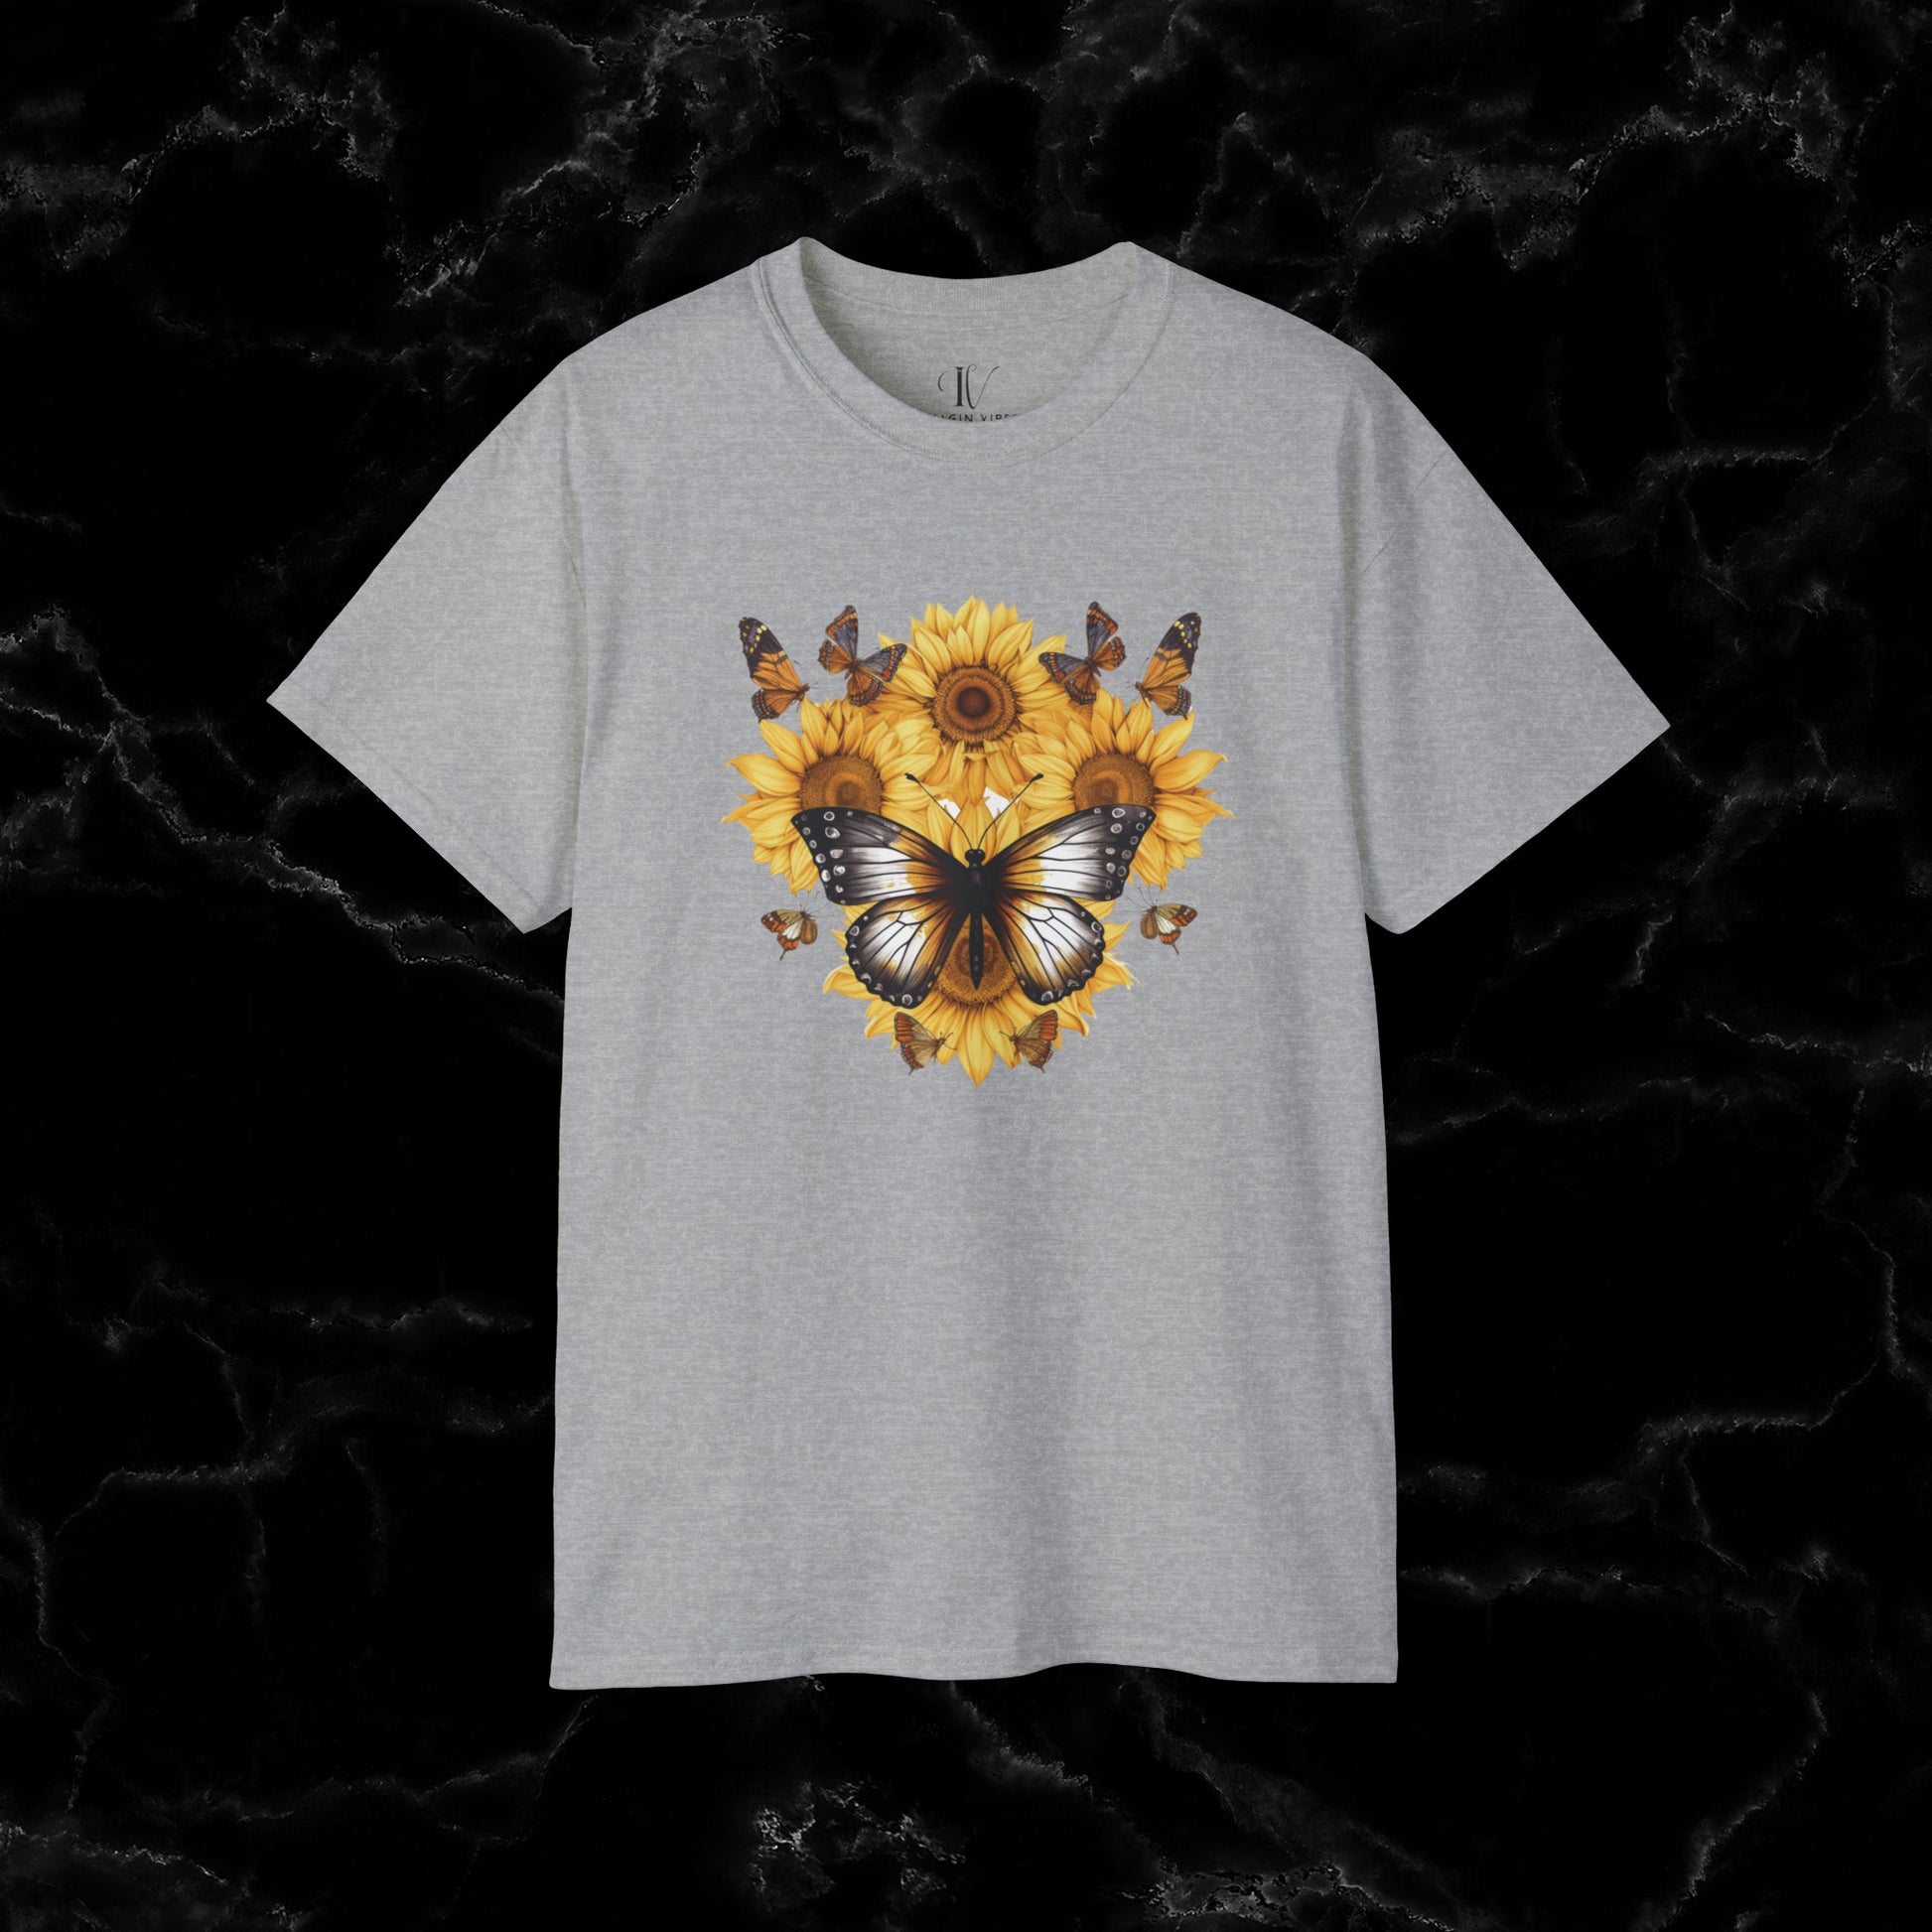 Sunflower Shirt - A Floral Tee, Garden Shirt, and Women's Fall Shirt with Nature-Inspired Design T-Shirt Sport Grey S 